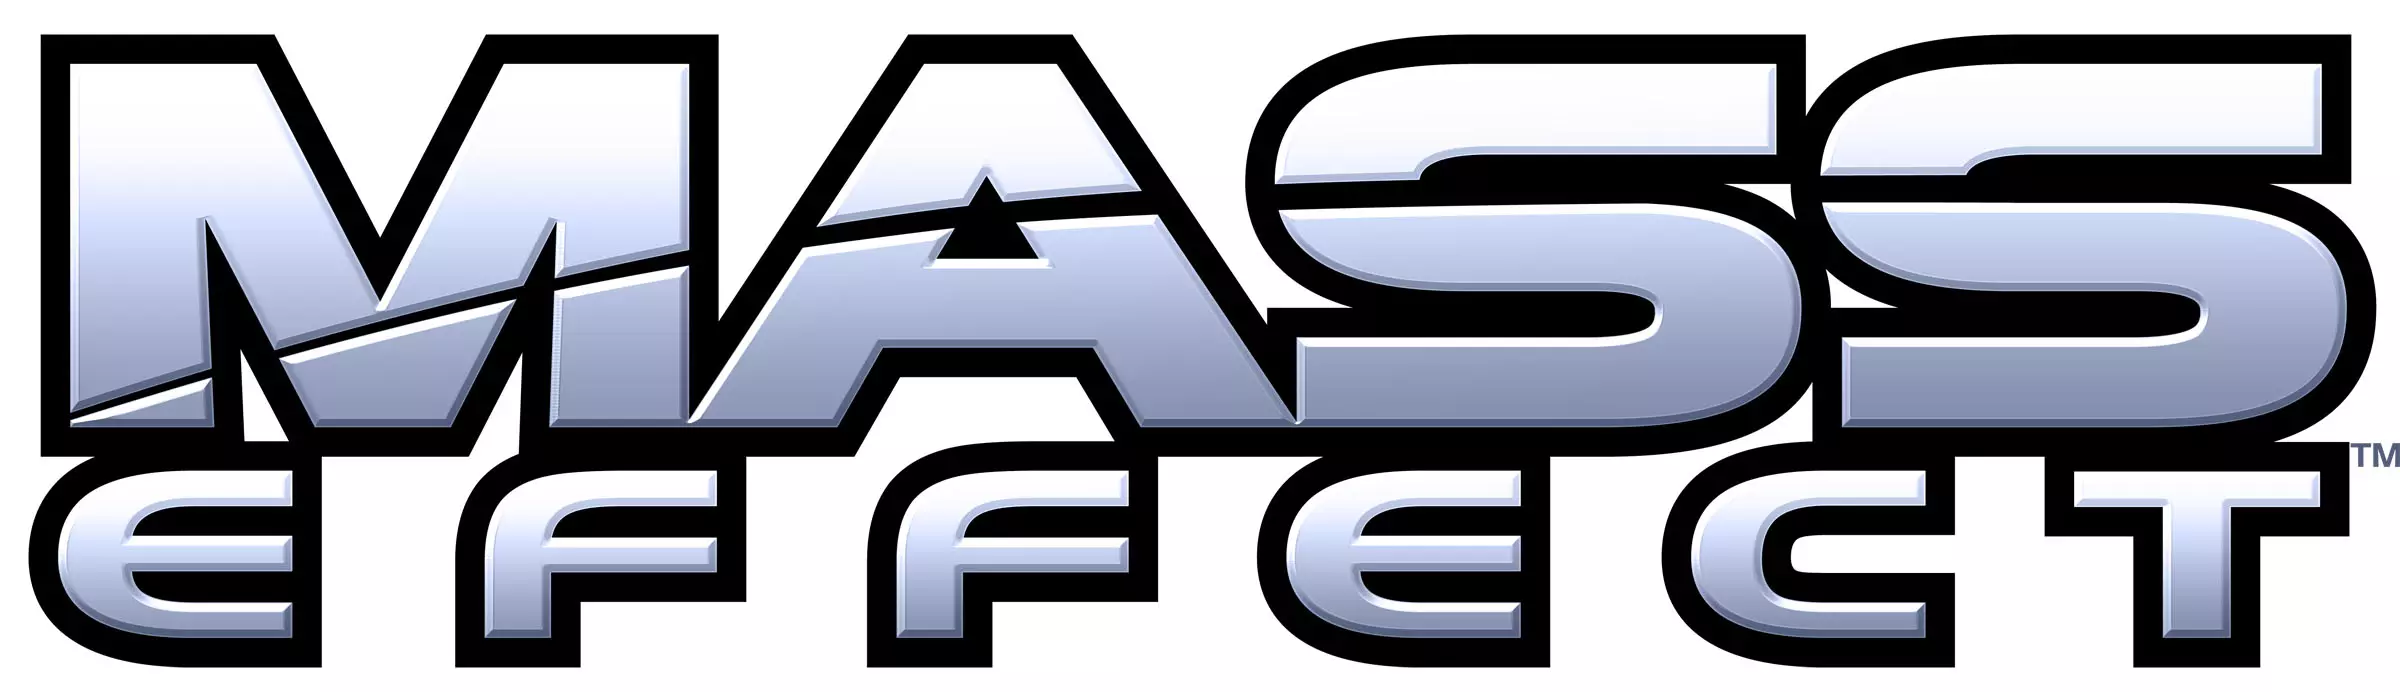 Серия Mass Effect — это совокупность художественных произведений (компьютерных игр, книг и комиксов) по вымышленной вселенной Mass Effect.